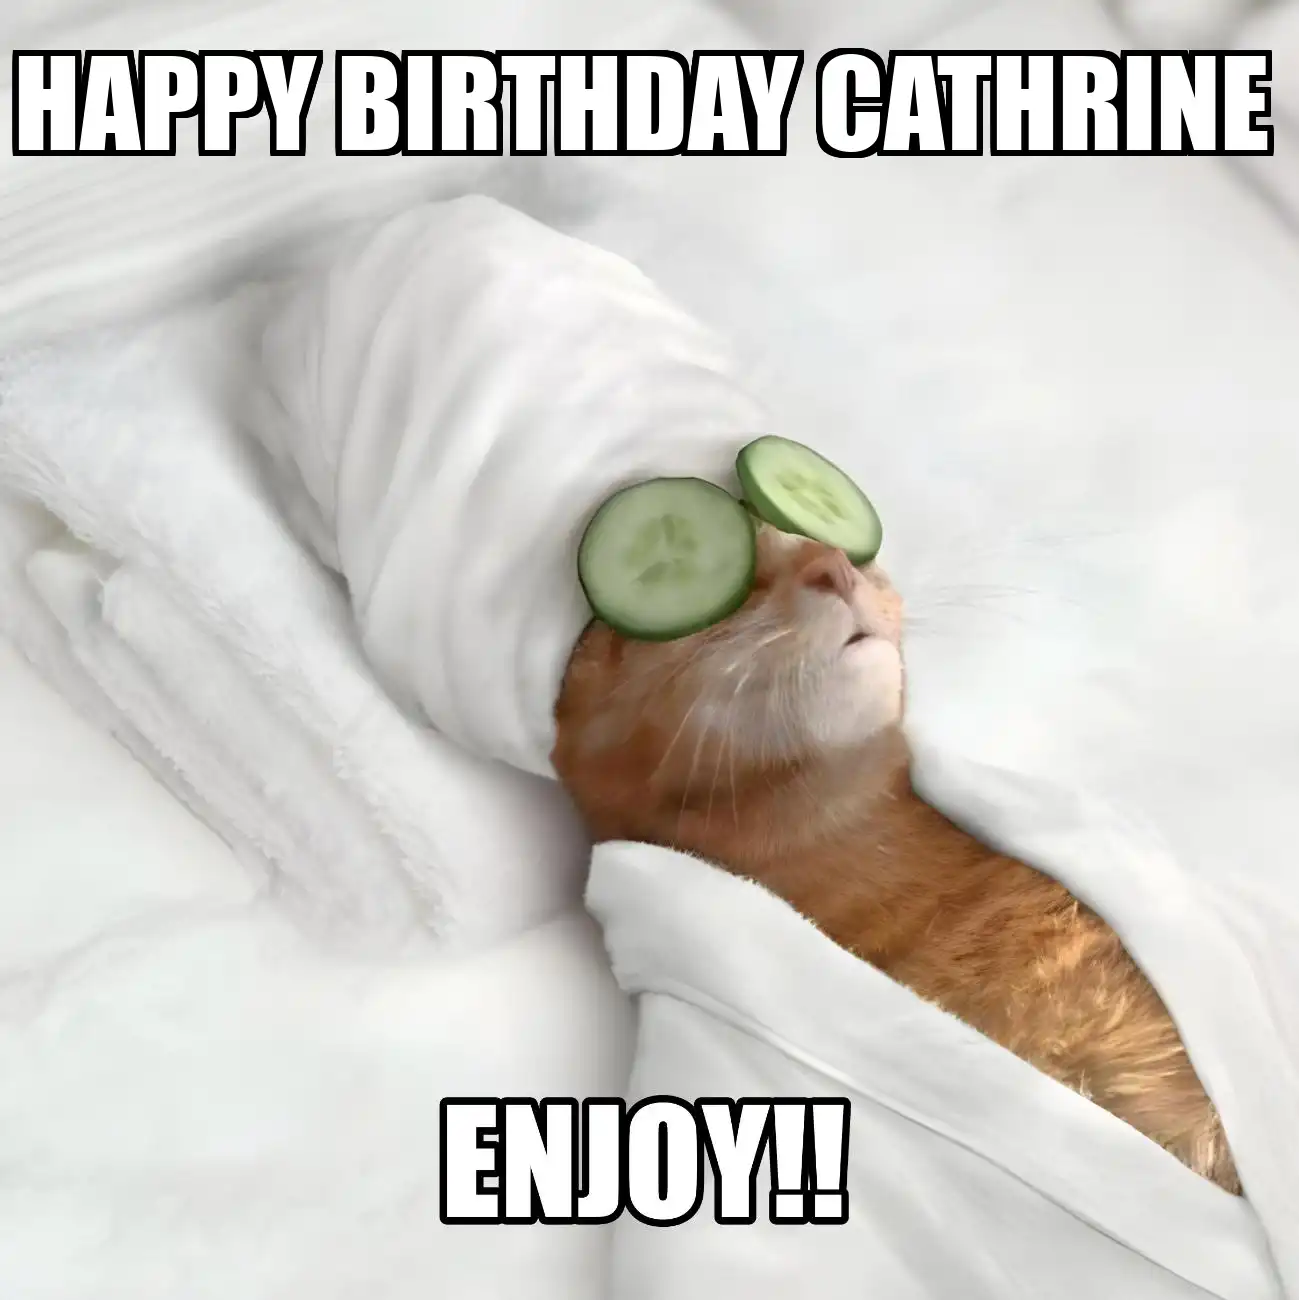 Happy Birthday Cathrine Enjoy Cat Meme